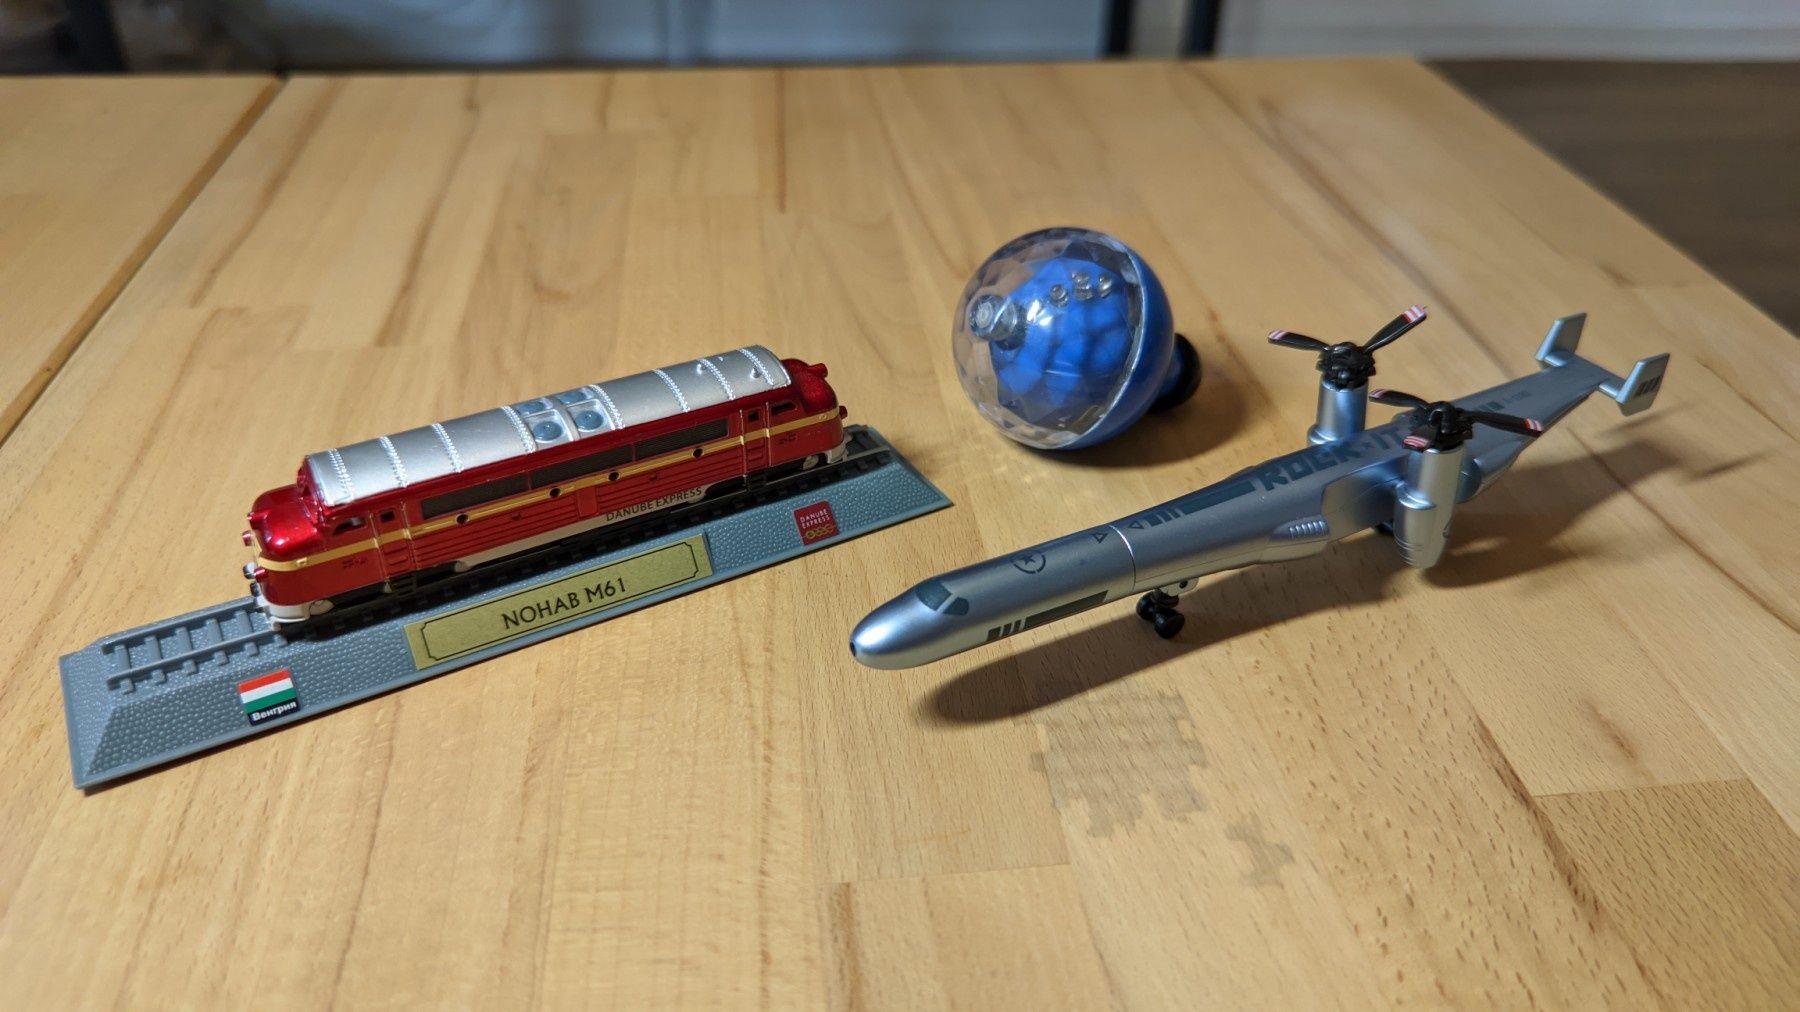 Можельки самолета (в виде ручки) и поезда, юла в подарок